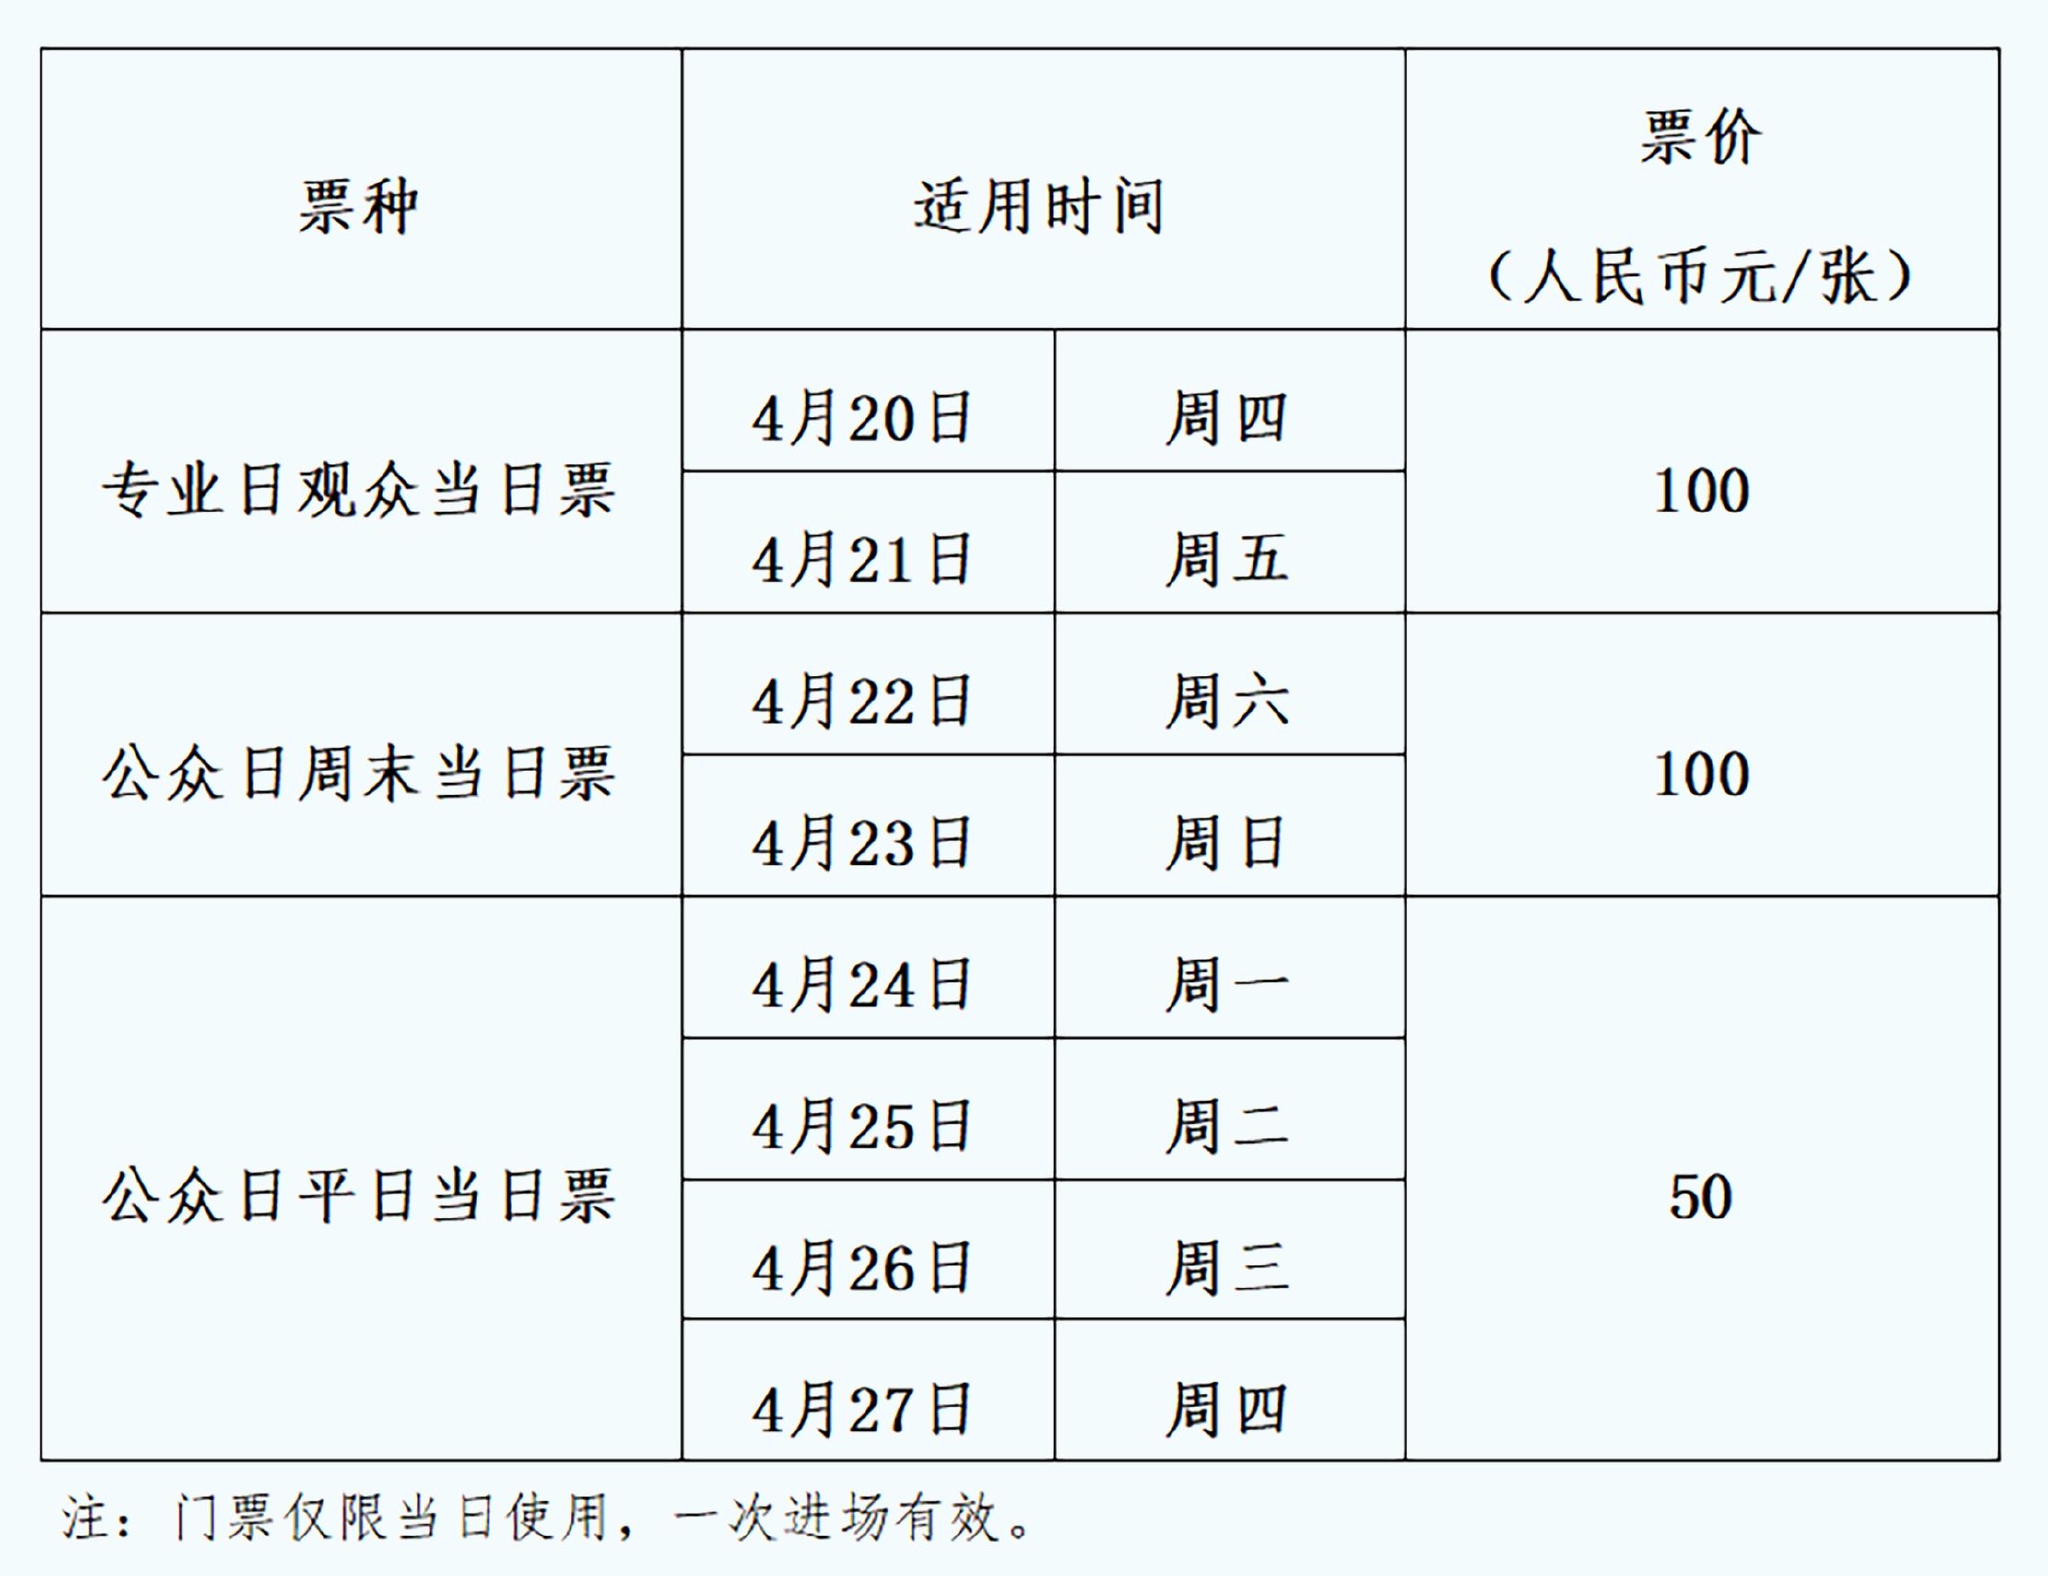 2023上海车展将于4月18日至27日举行